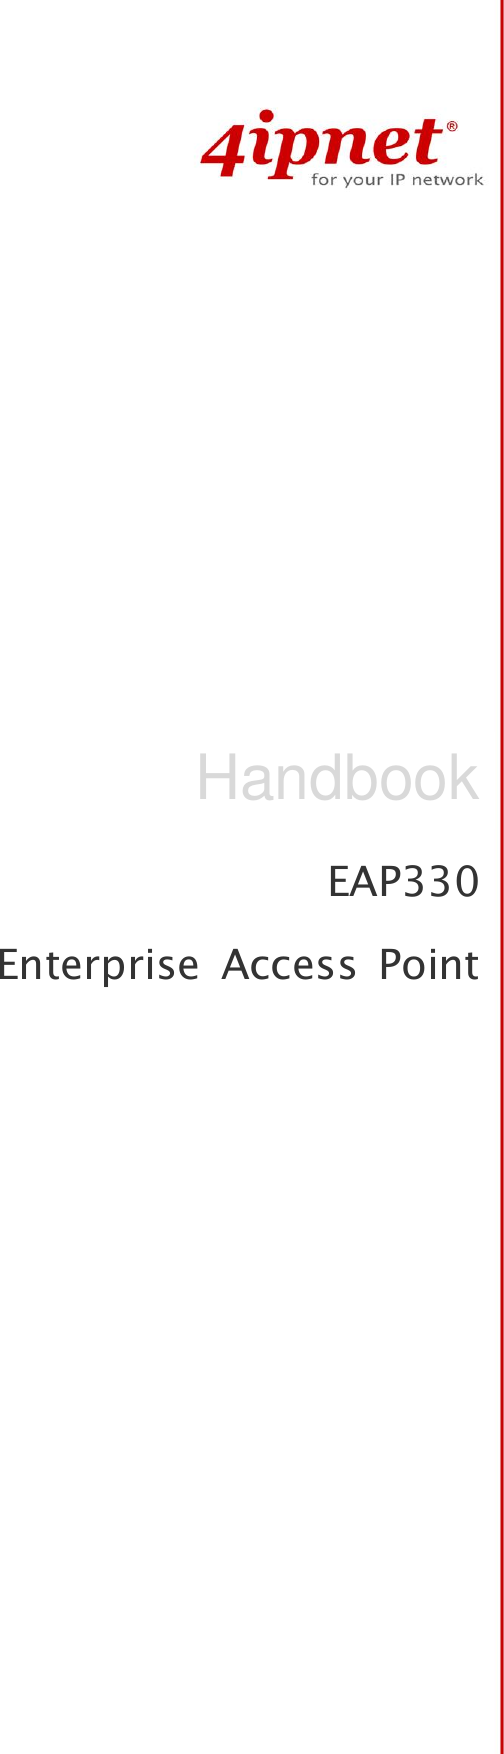   EAP330 Enterprise  Access  Point Handbook 